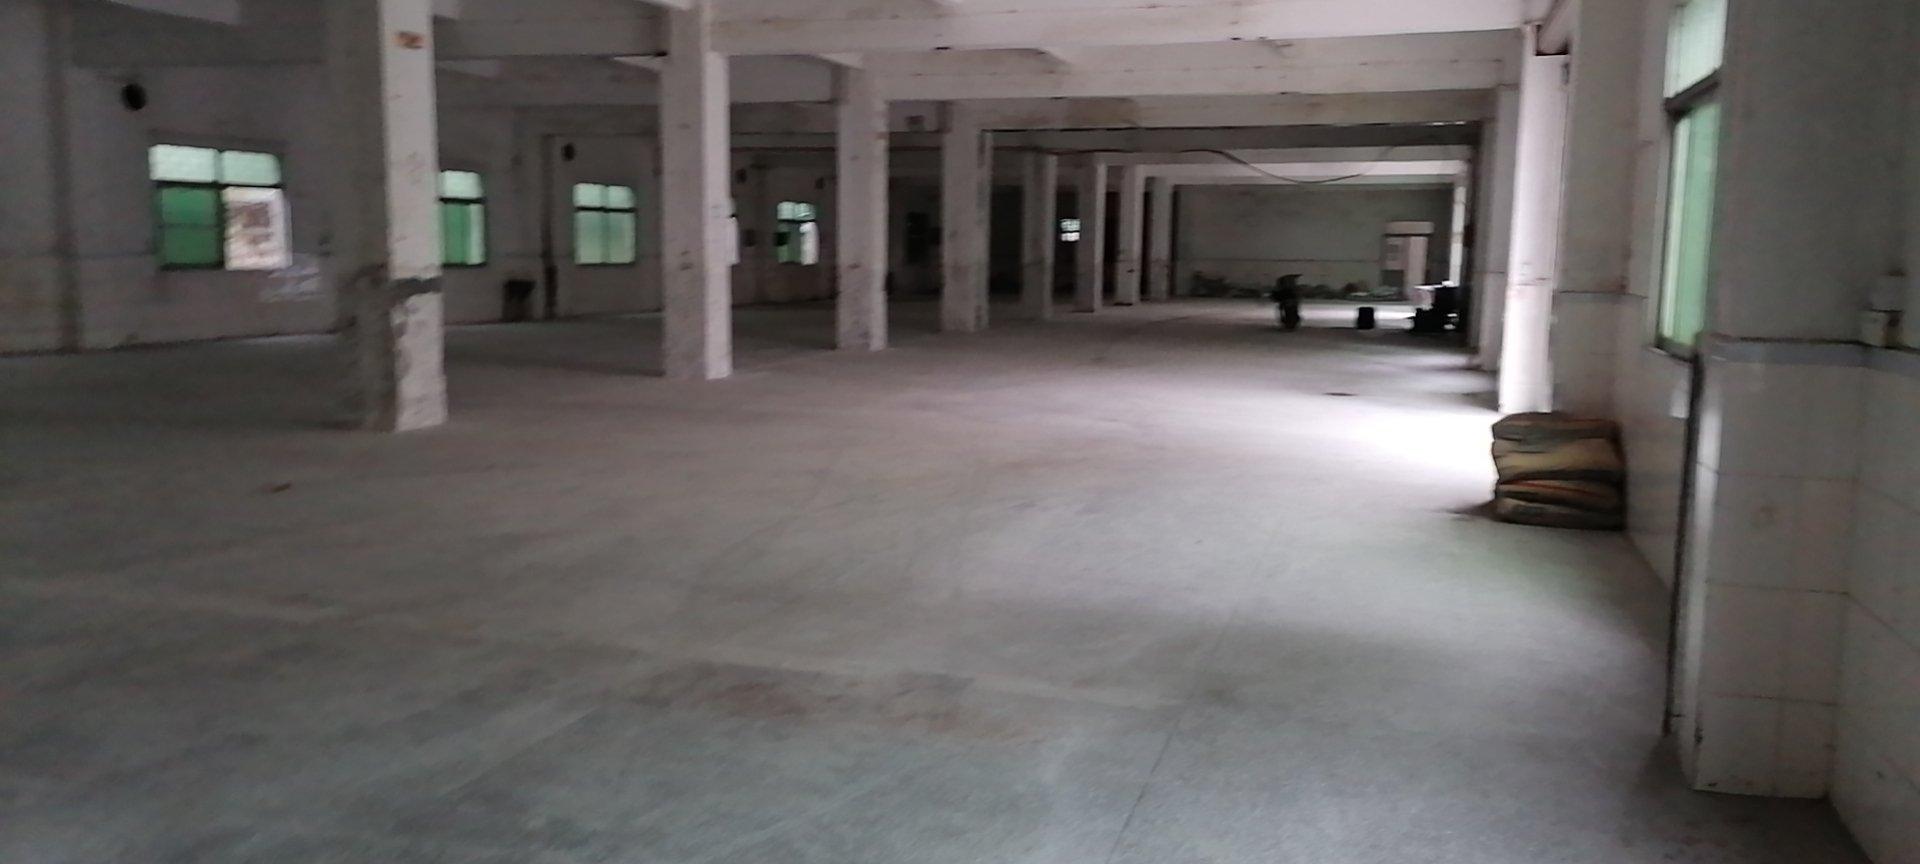 均禾石马工业区独门独院分租标准一楼1350平方标准厂房仓库